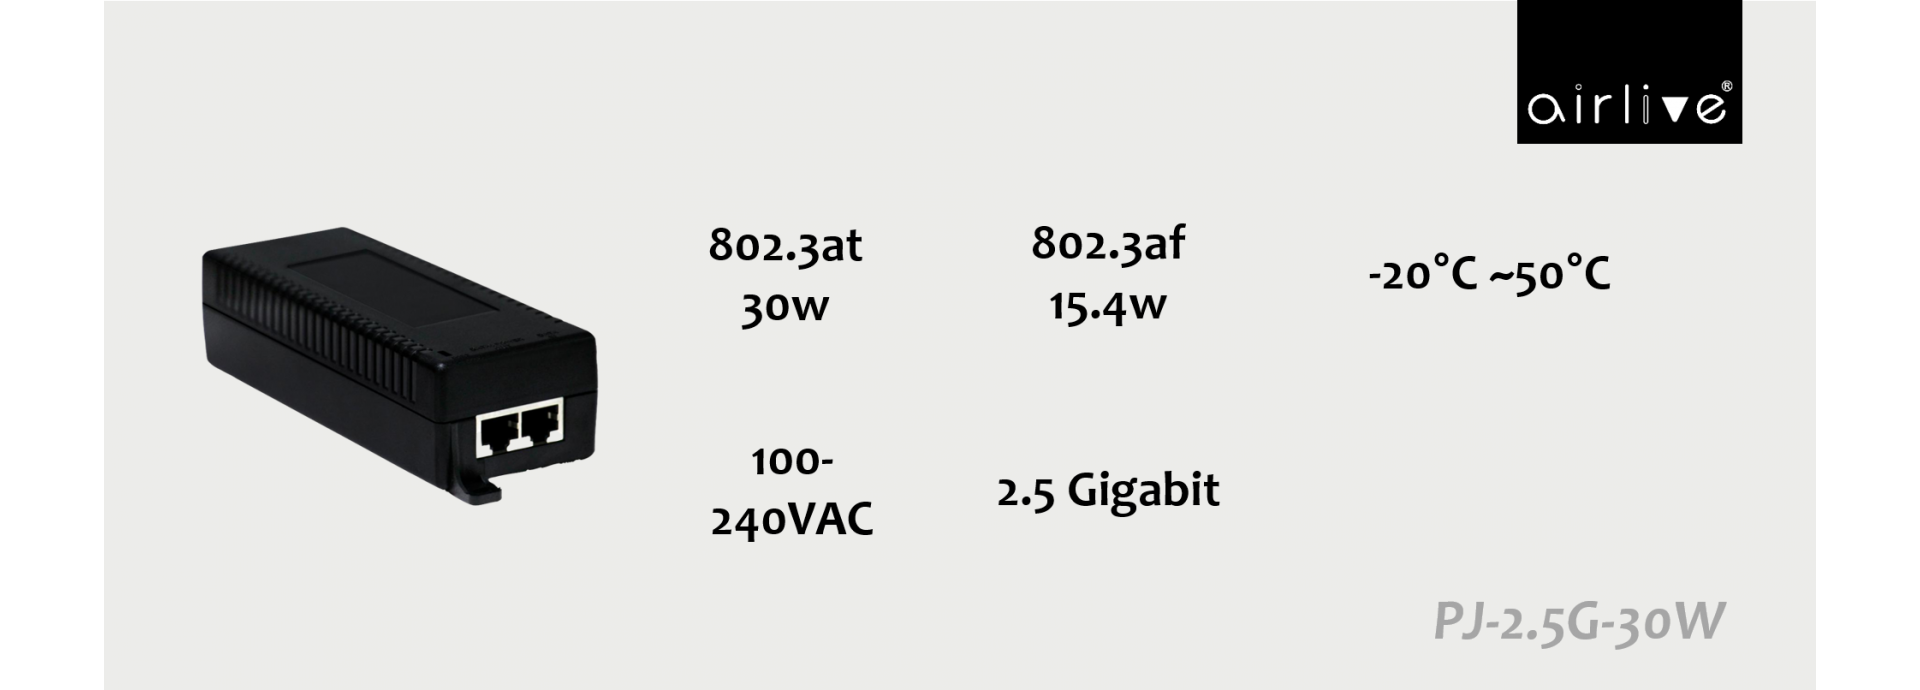 2.5G Gigabit Ethernet 802.3at PoE Injector